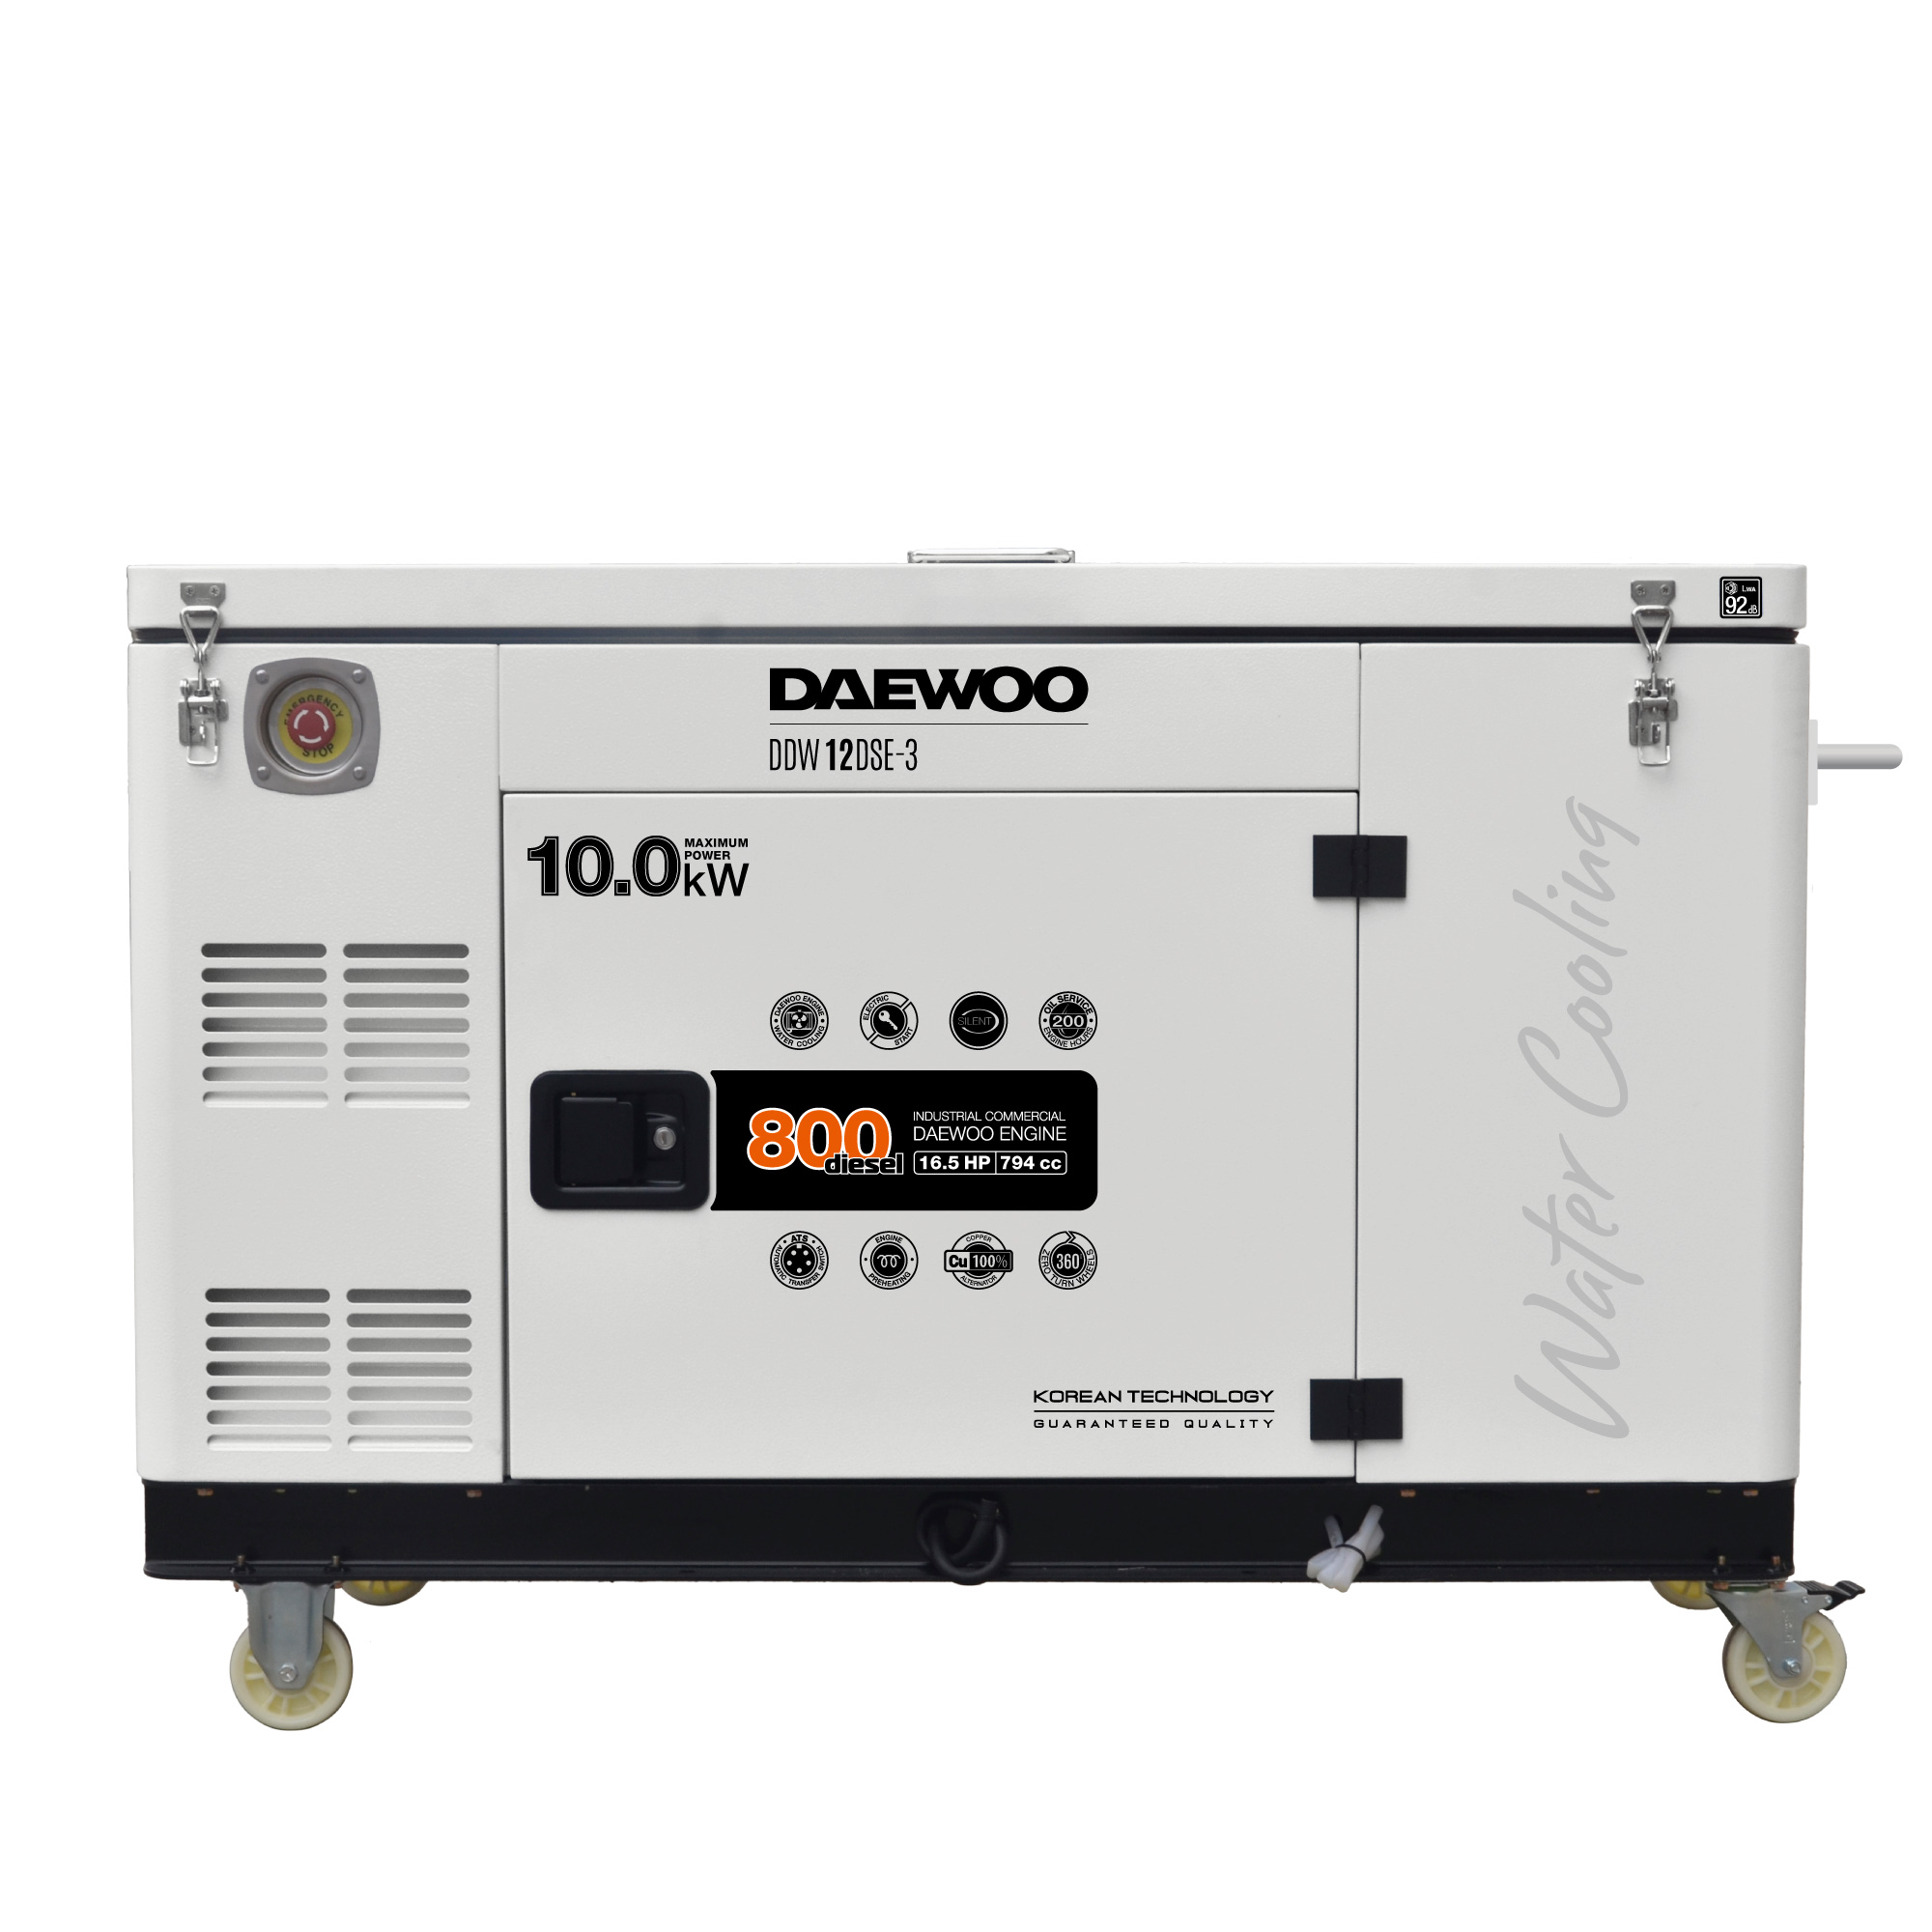 Где купить Генератор дизельный с водяной системой охлаждения DAEWOO DDW 12 DSE-3 Daewoo 